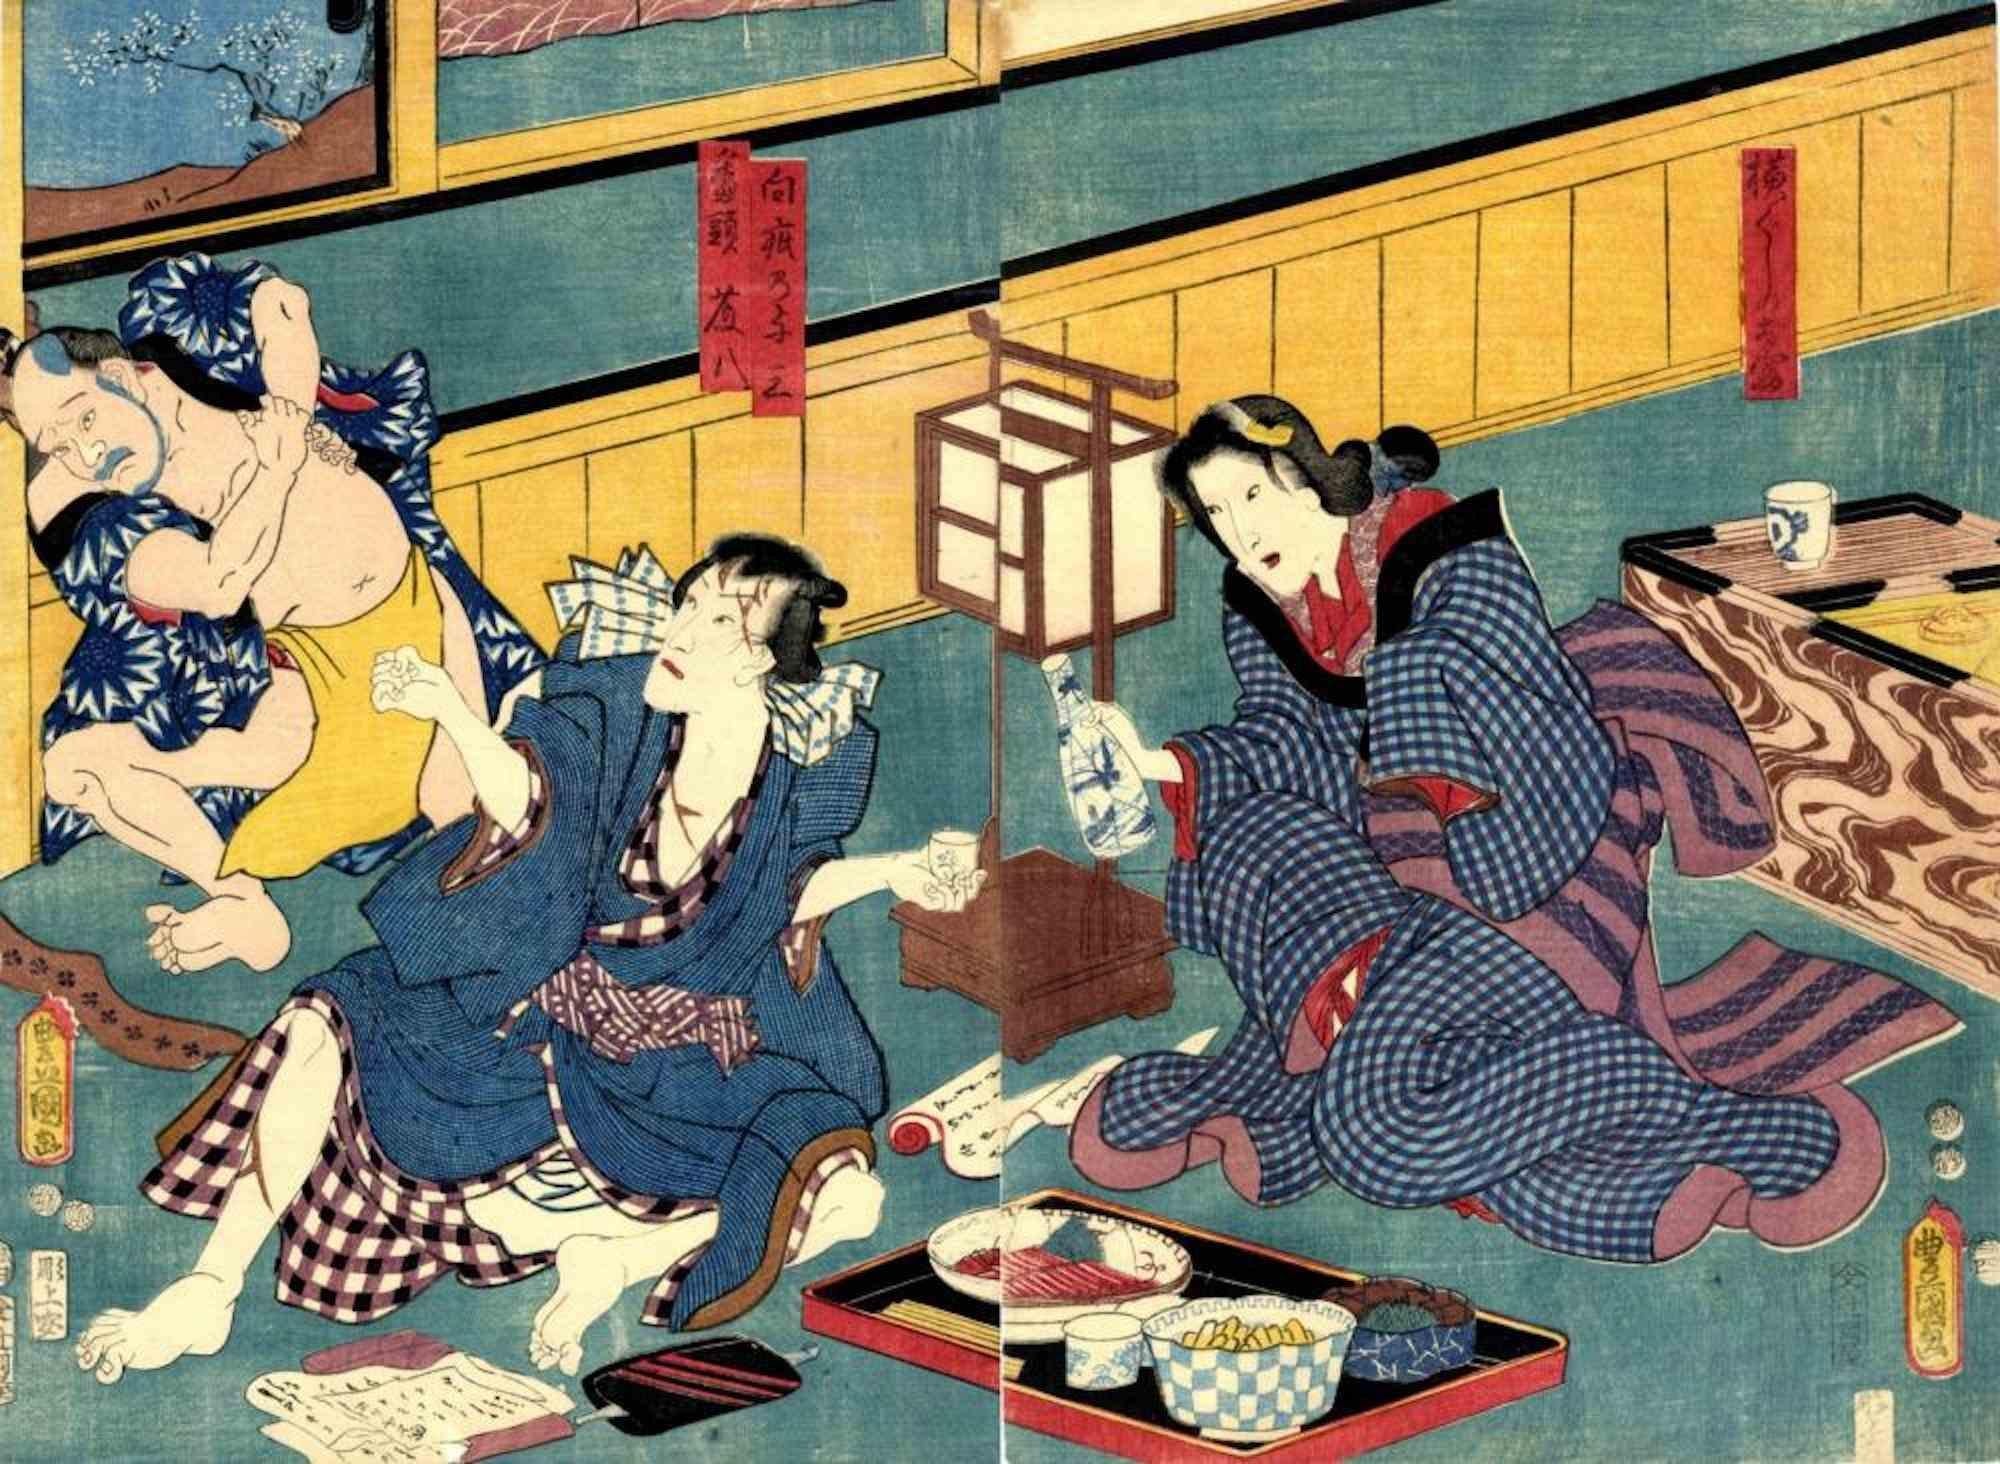 Utagawa Kunisada (Toyokuni III) Figurative Print - Romantic Drama  -  Woodcut Print by Utagawa Kunisada - 1850s